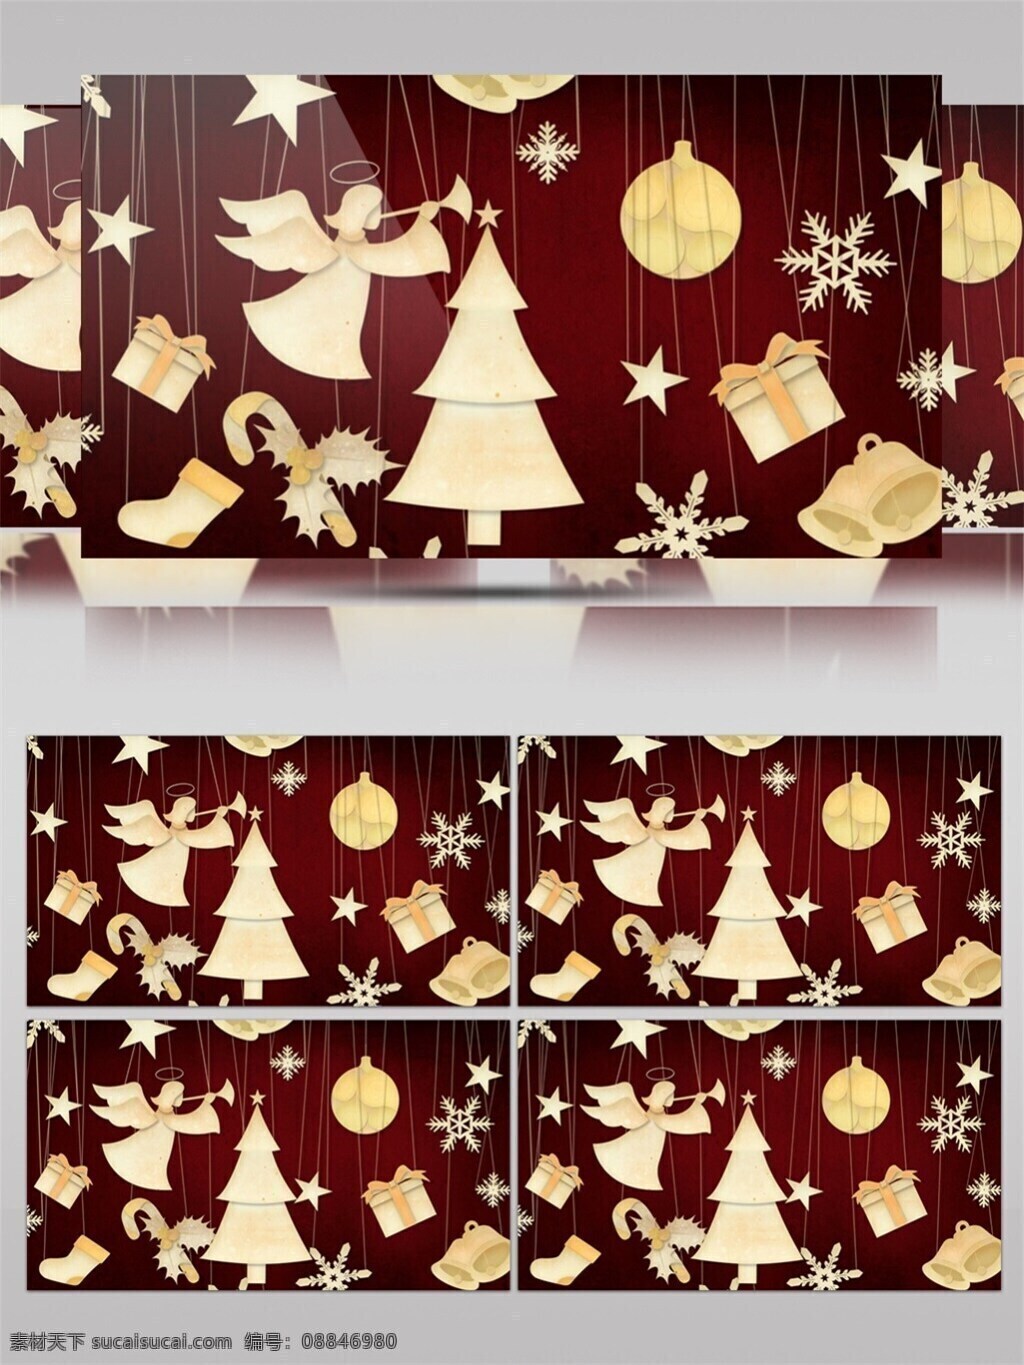 暖 黄色 团 圣诞节 视频 节日壁纸 节日 特效 暖黄色温暖 圣诞树壁纸 图案壁纸